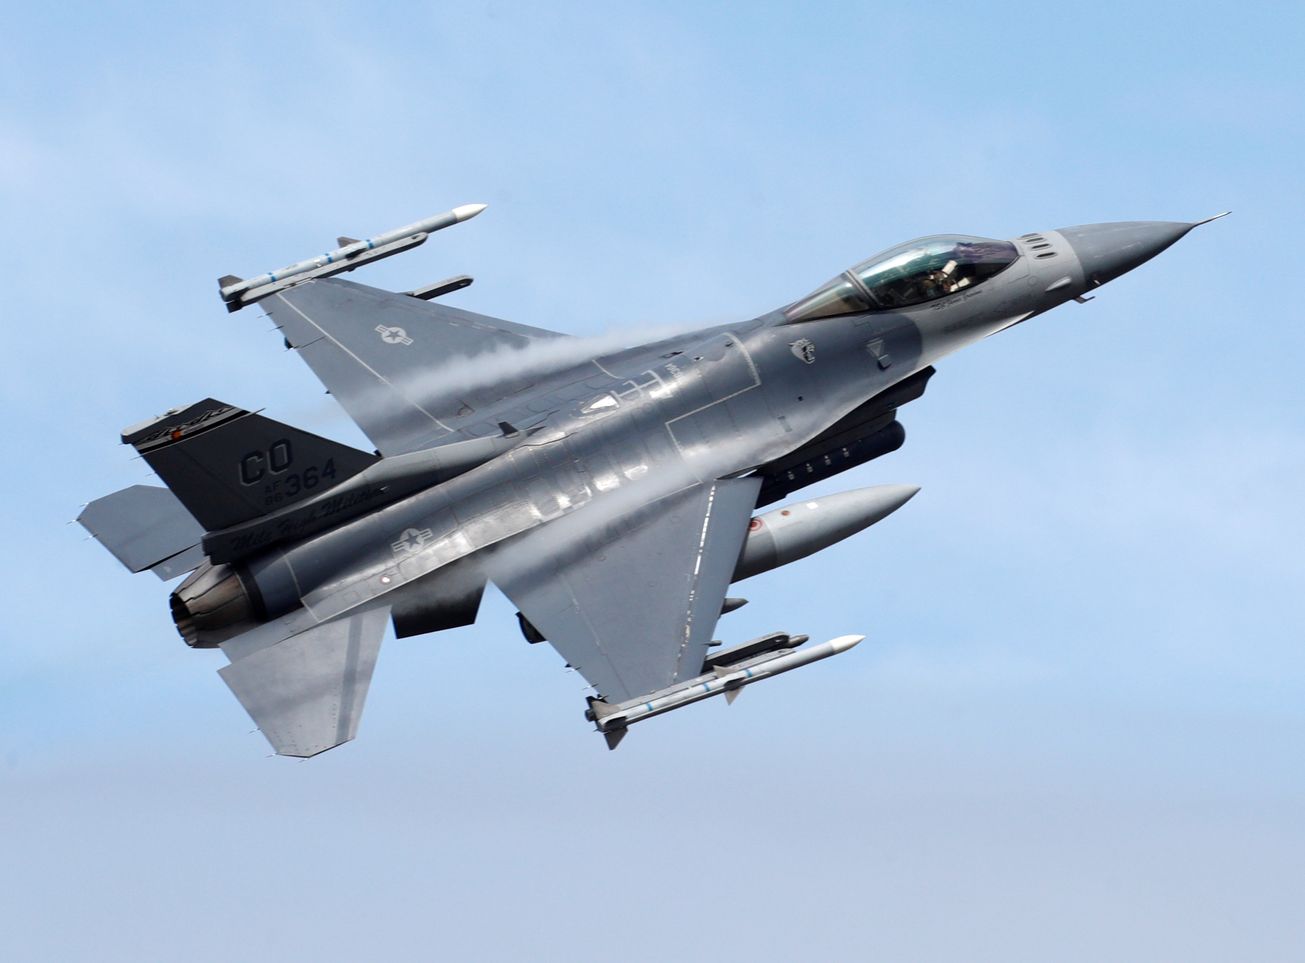 Chiến đấu cơ F-16 chặn máy bay dân sự nơi Tổng thống Biden phát biểu - Ảnh 1.